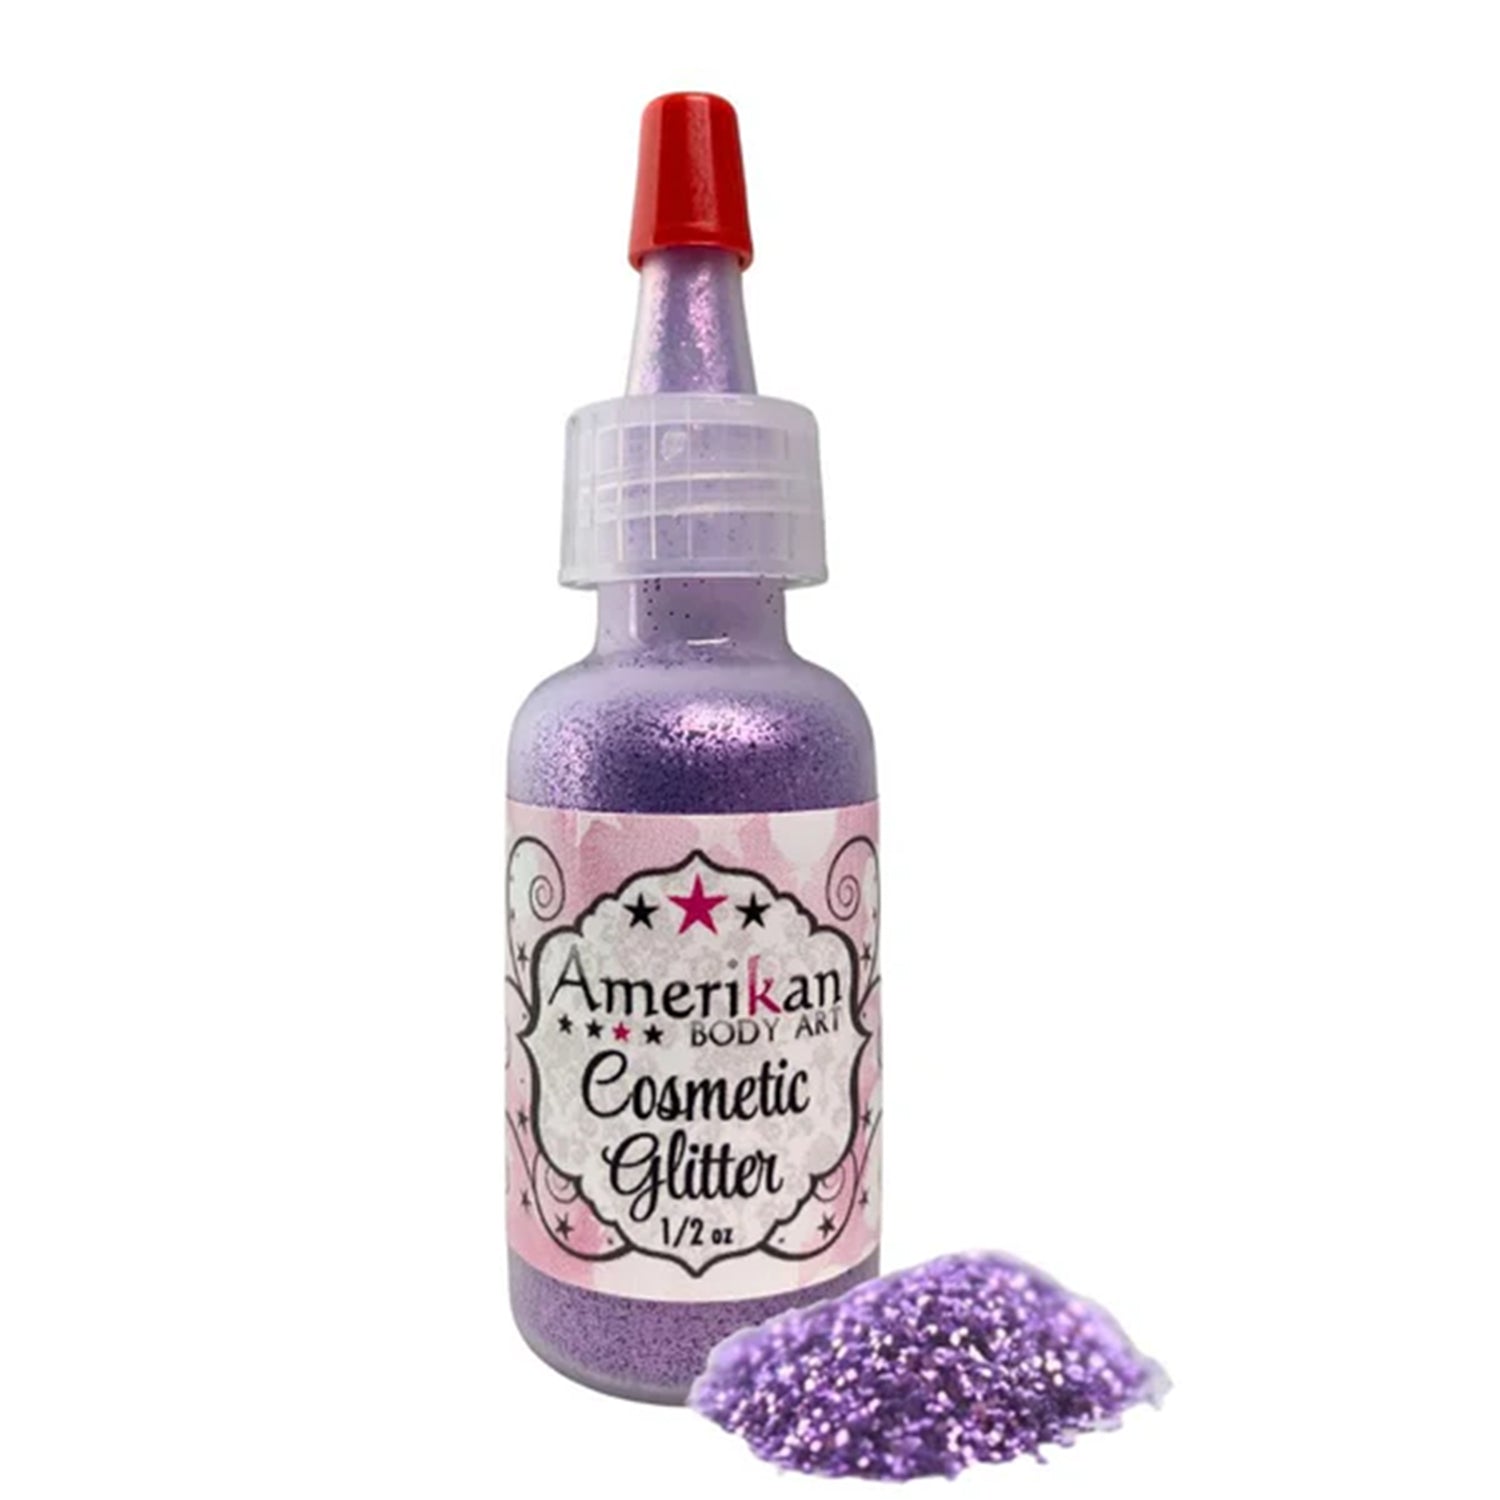 Amerikan Body Art Opaque Glitter - Lavender (0.5 oz)